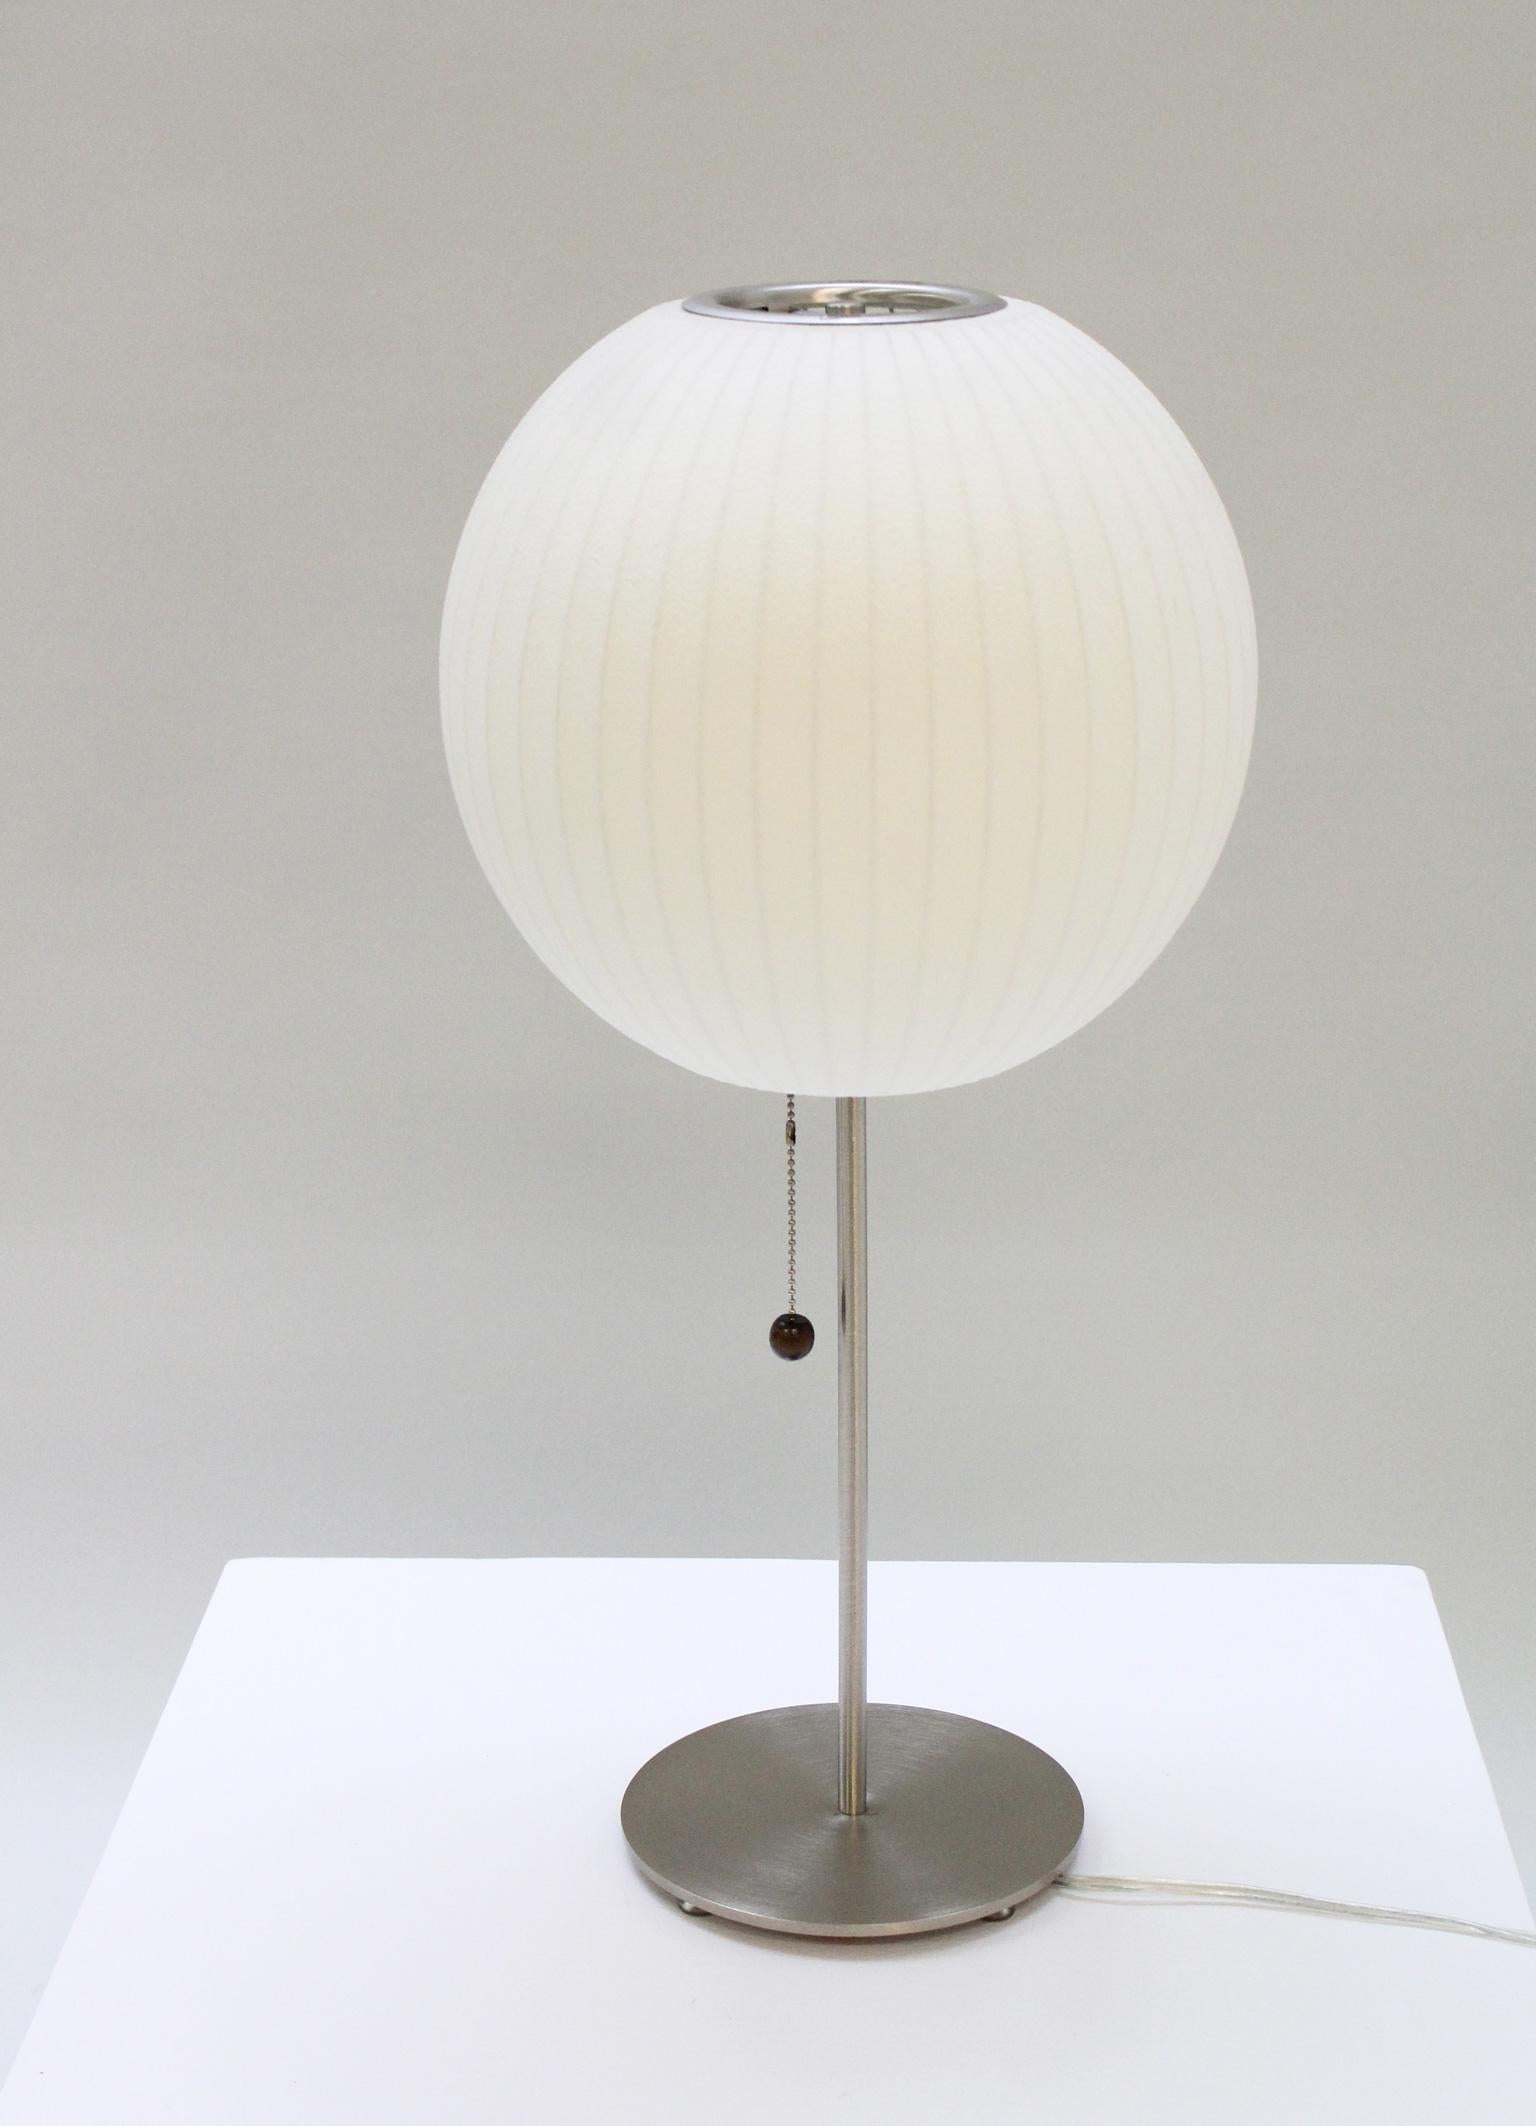 Bubble-Tischlampe, entworfen von George Nelson 1947-50, USA. Sockel aus poliertem Stahl und Schirm aus Metall und Vinyl. Dies ist eine Modernica-Ausgabe.